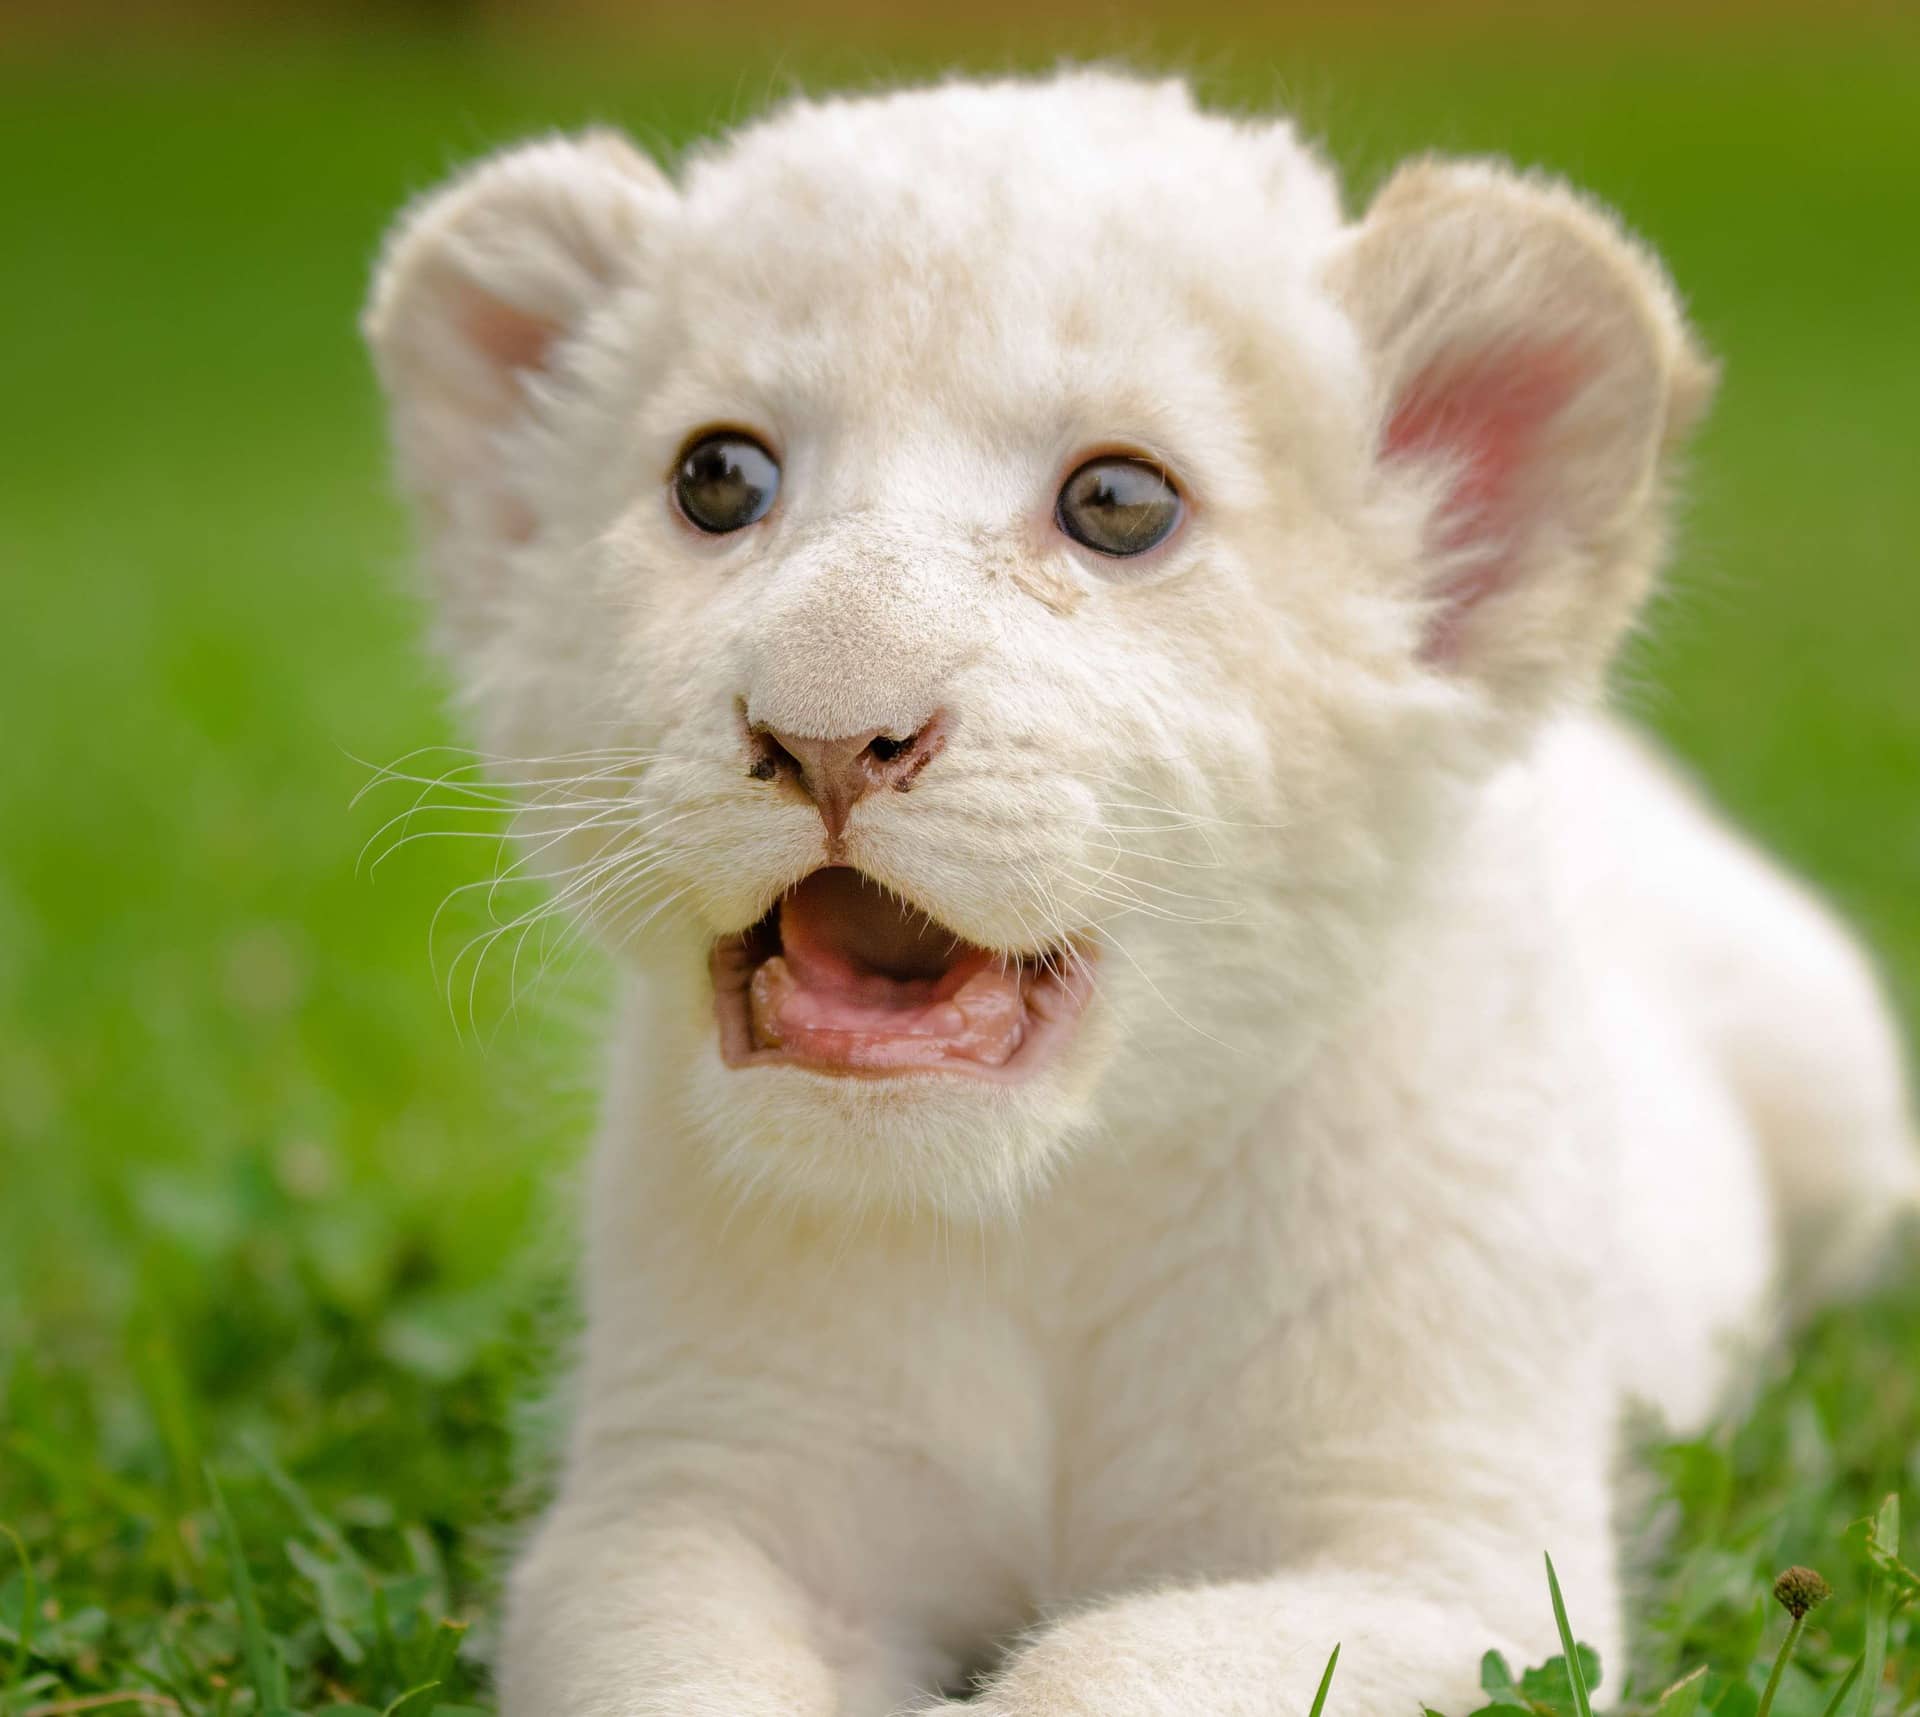 White lion cub images.